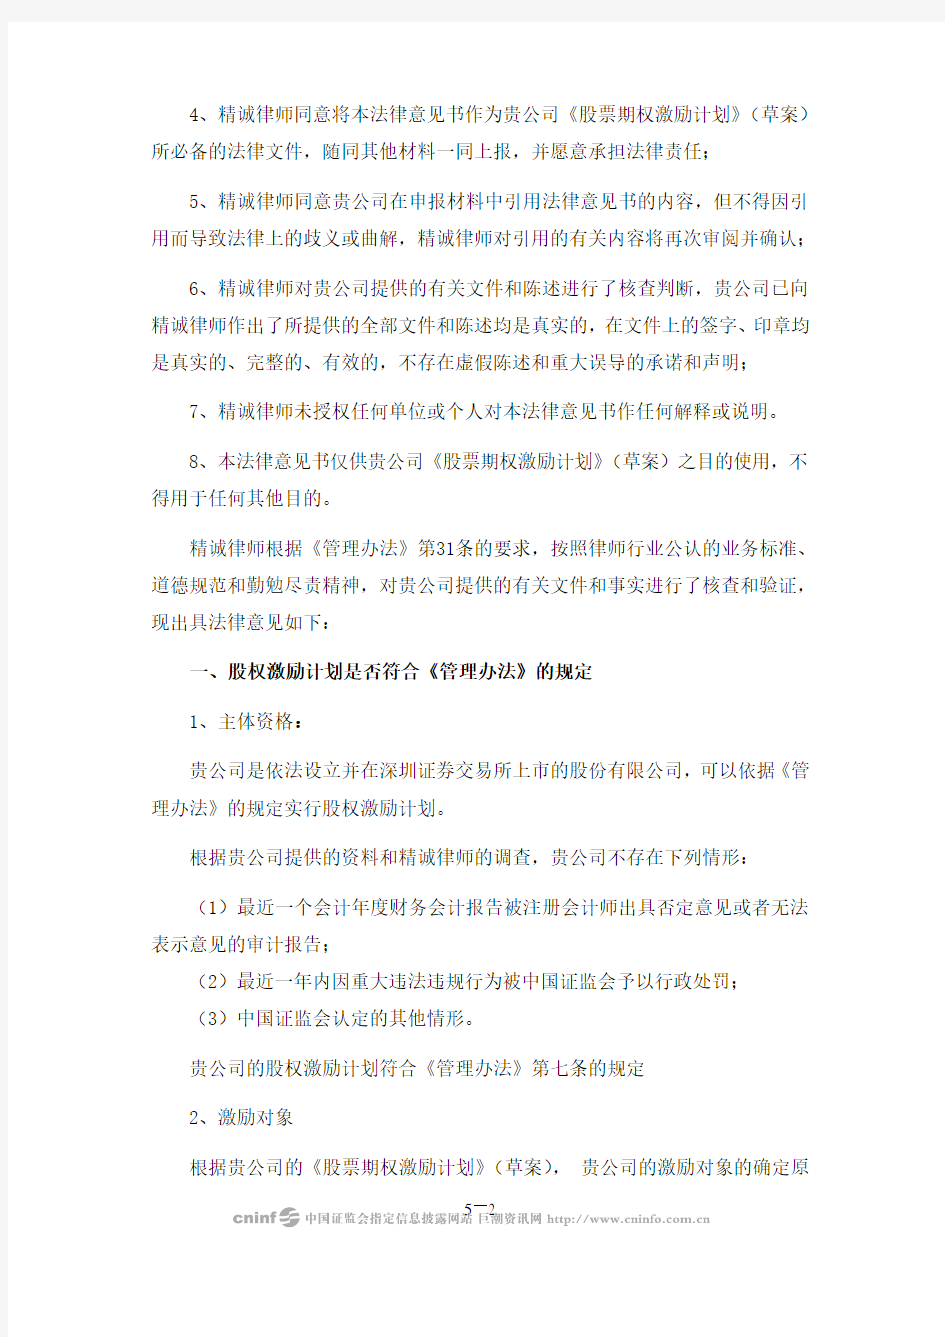 上海精诚申衡律师事务所关于公司股票期权激励计划草案ygsoft